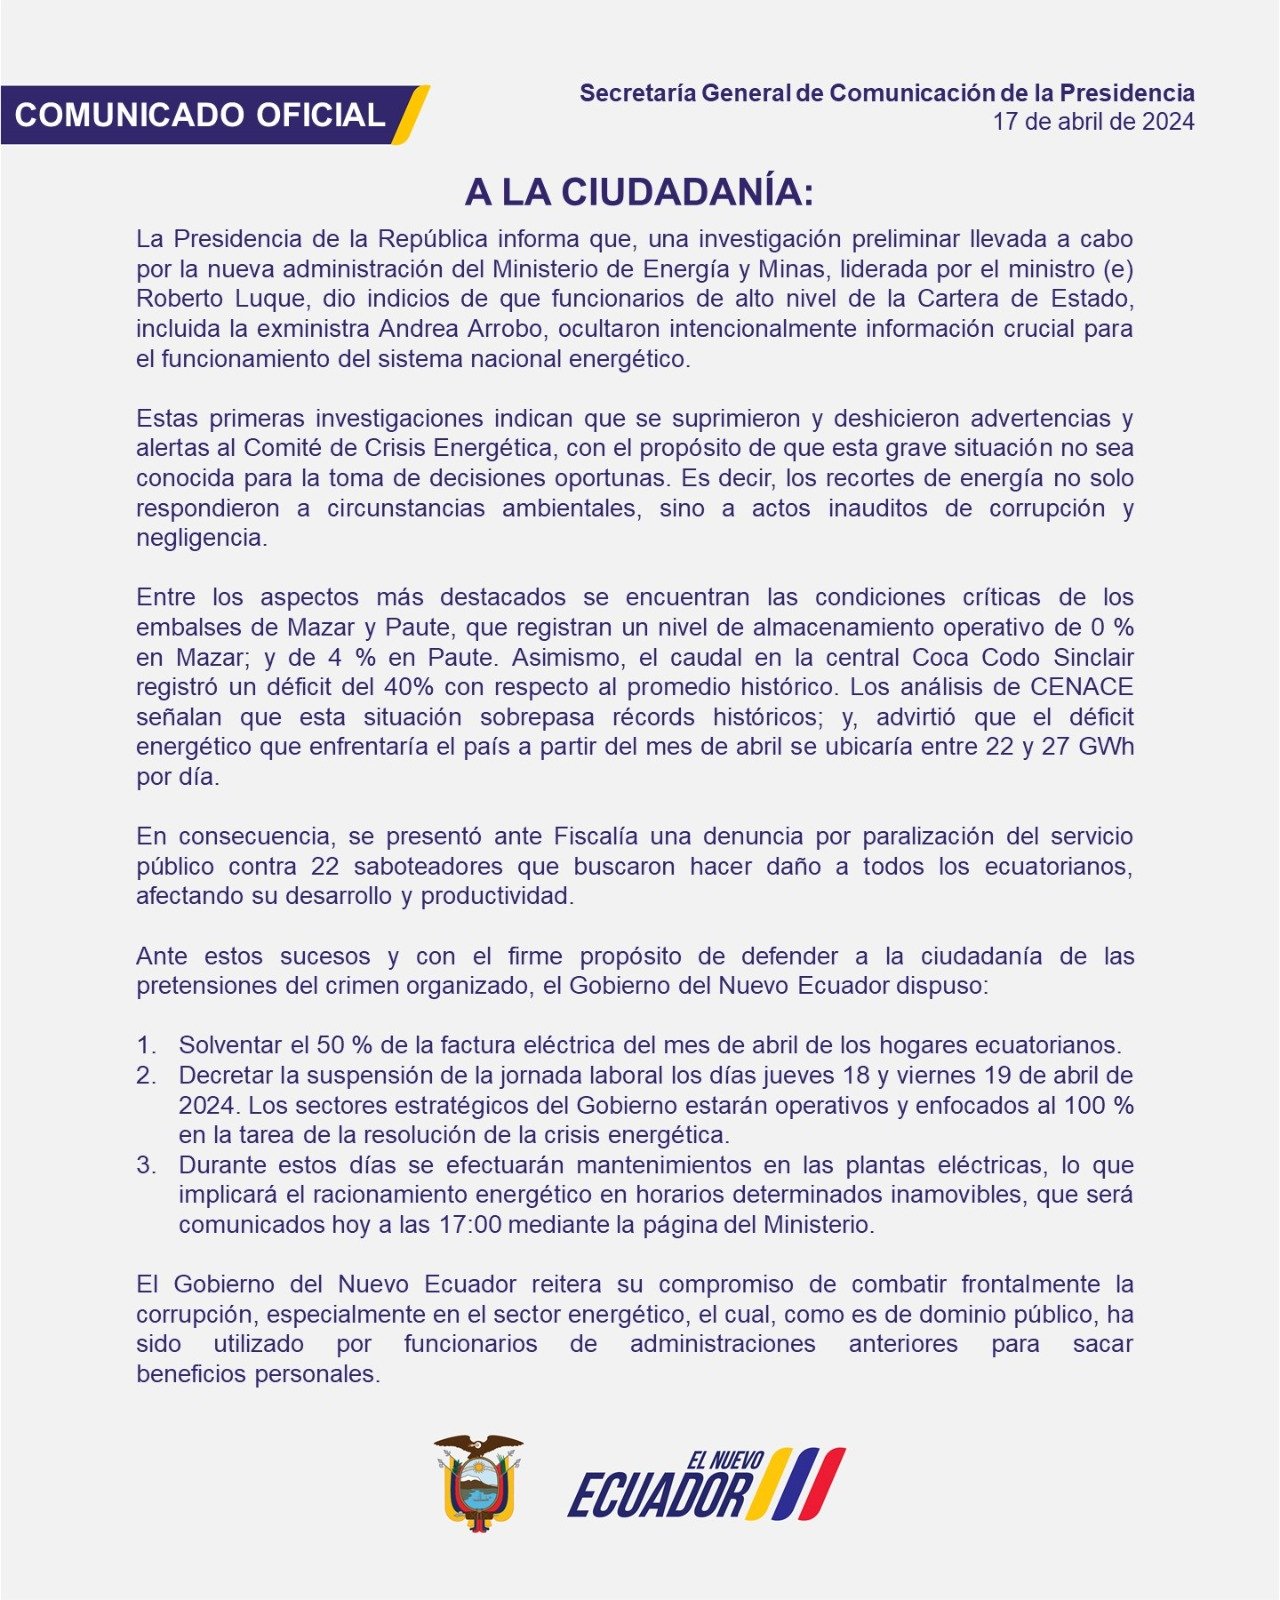 Comunicado de la Presidencia de Ecuador sobre la crisis de energía